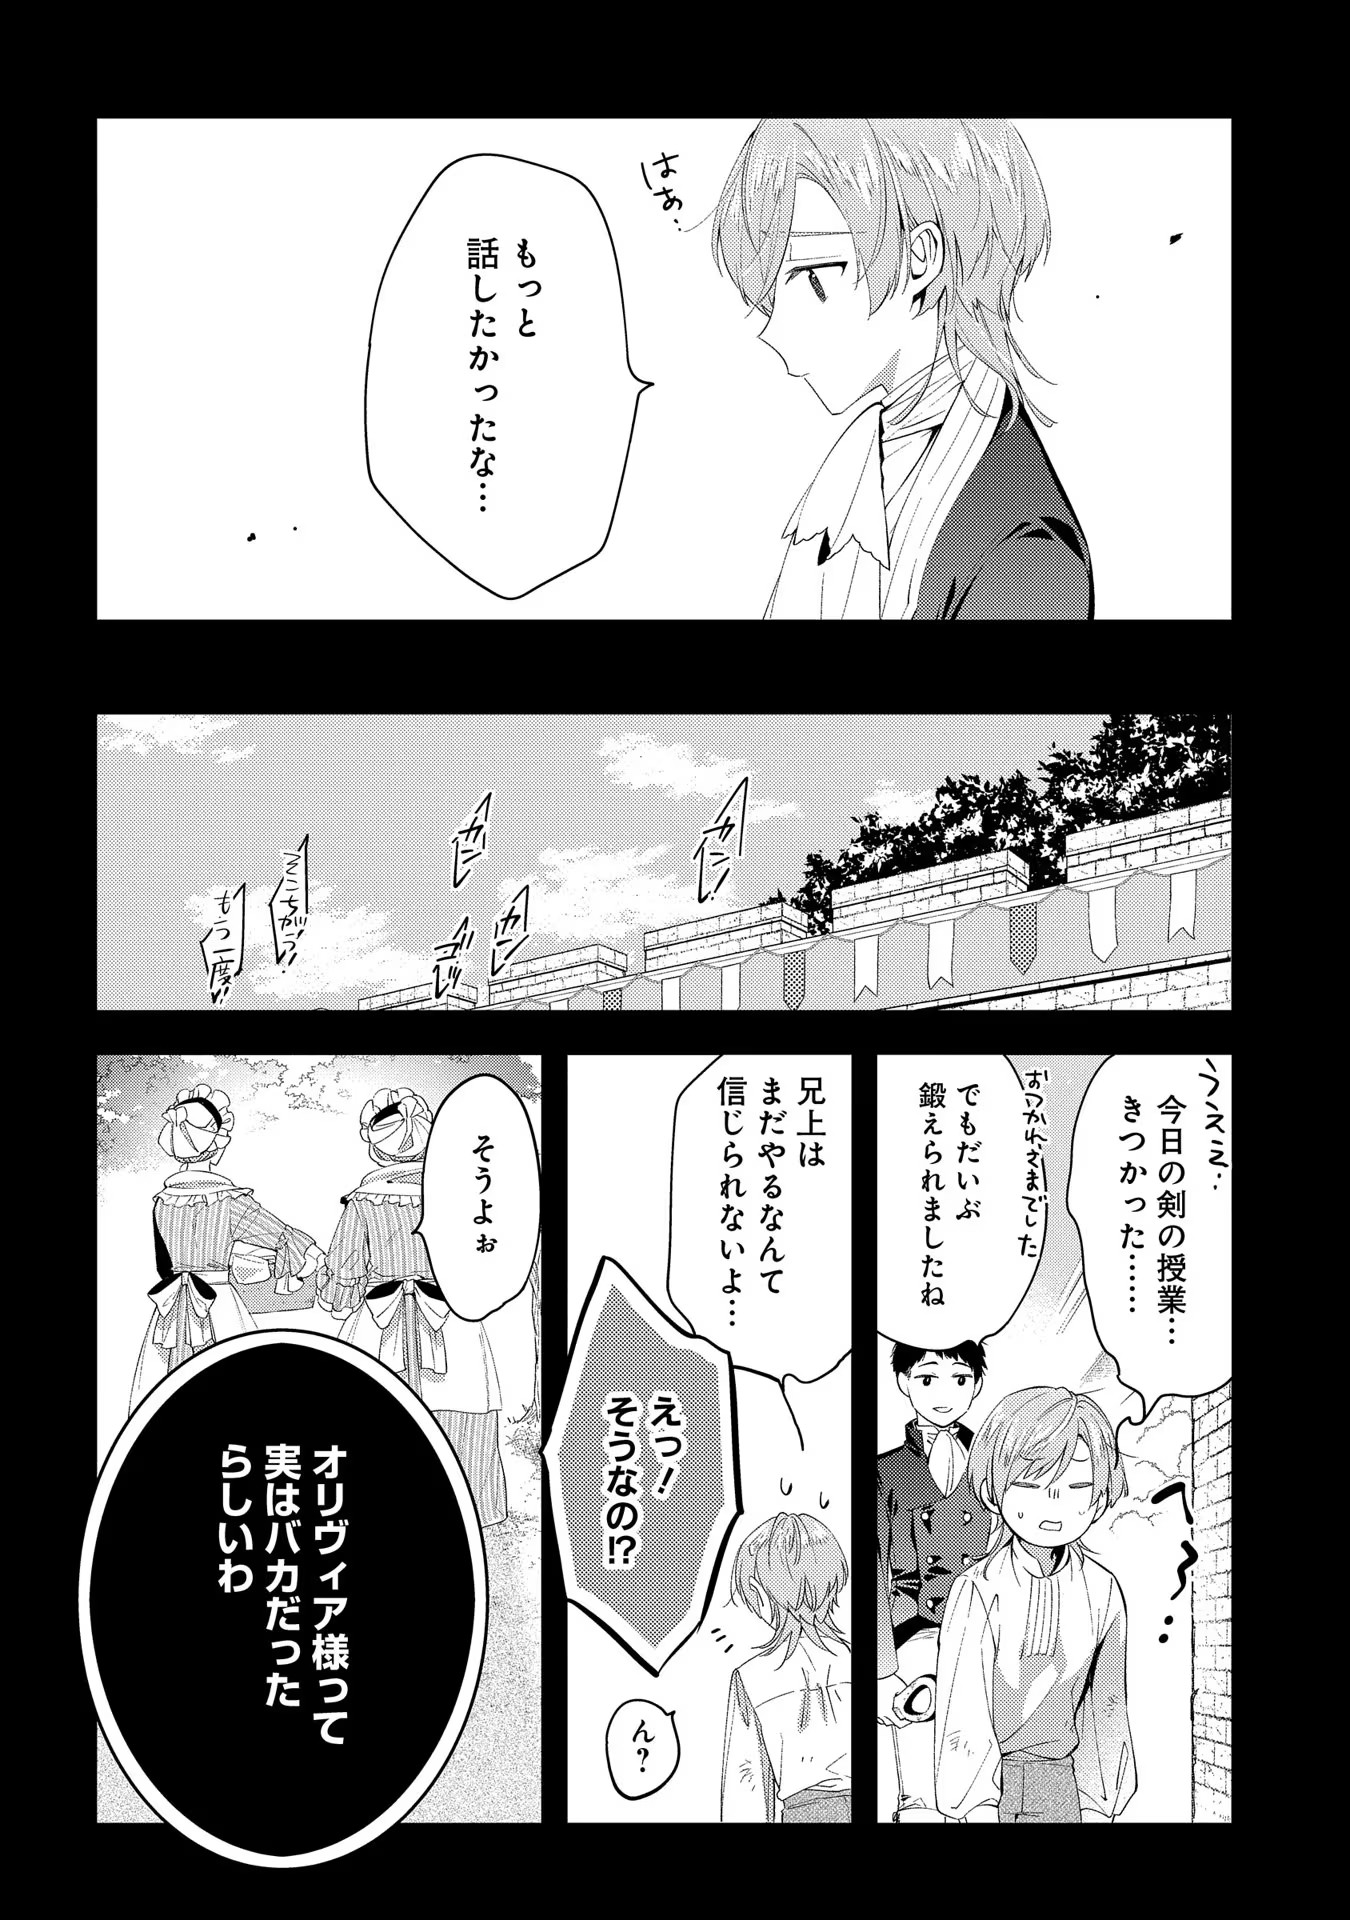 Outaishi ni Konyaku Hakisareta no de, Mou Baka no Furi wa Yameyou to Omoimasu - Chapter 3 - Page 18